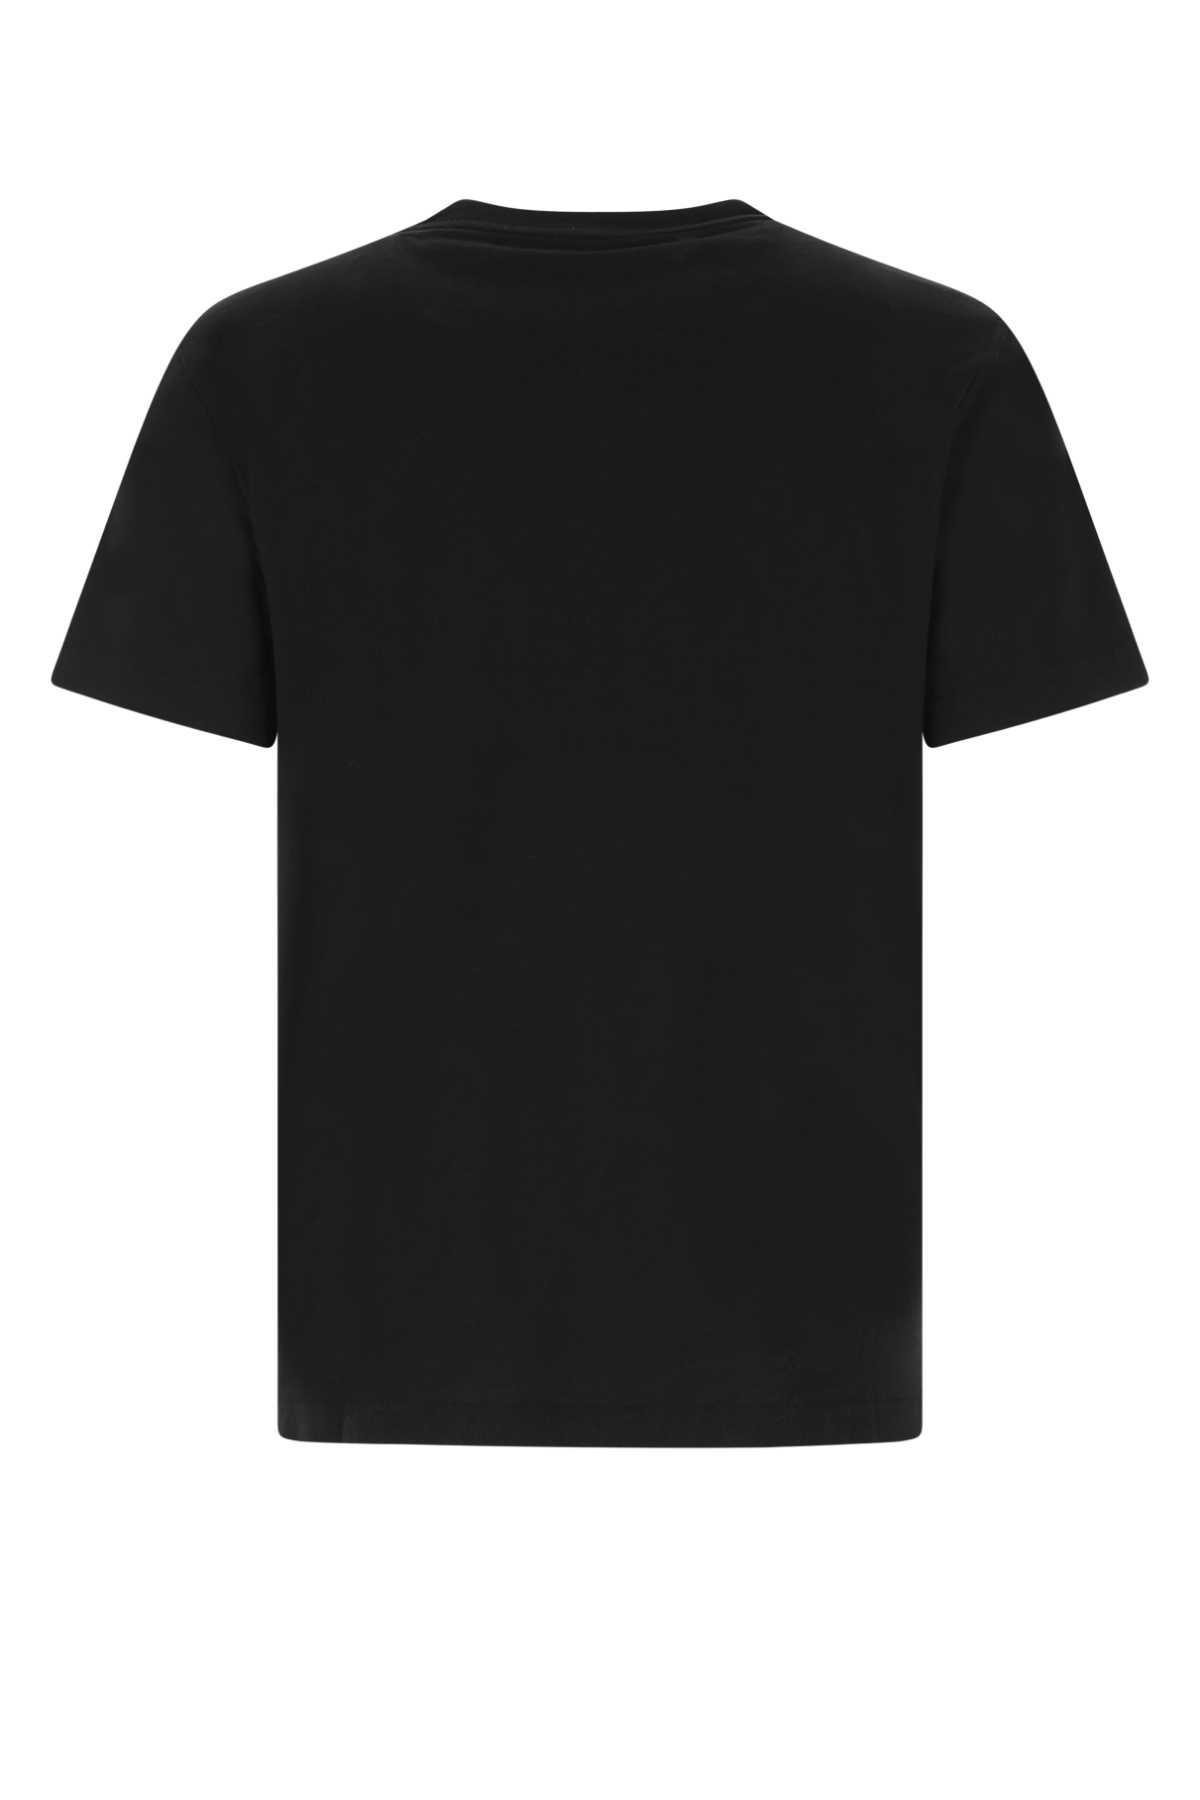 Koché Black Cotton T-shirt In 900